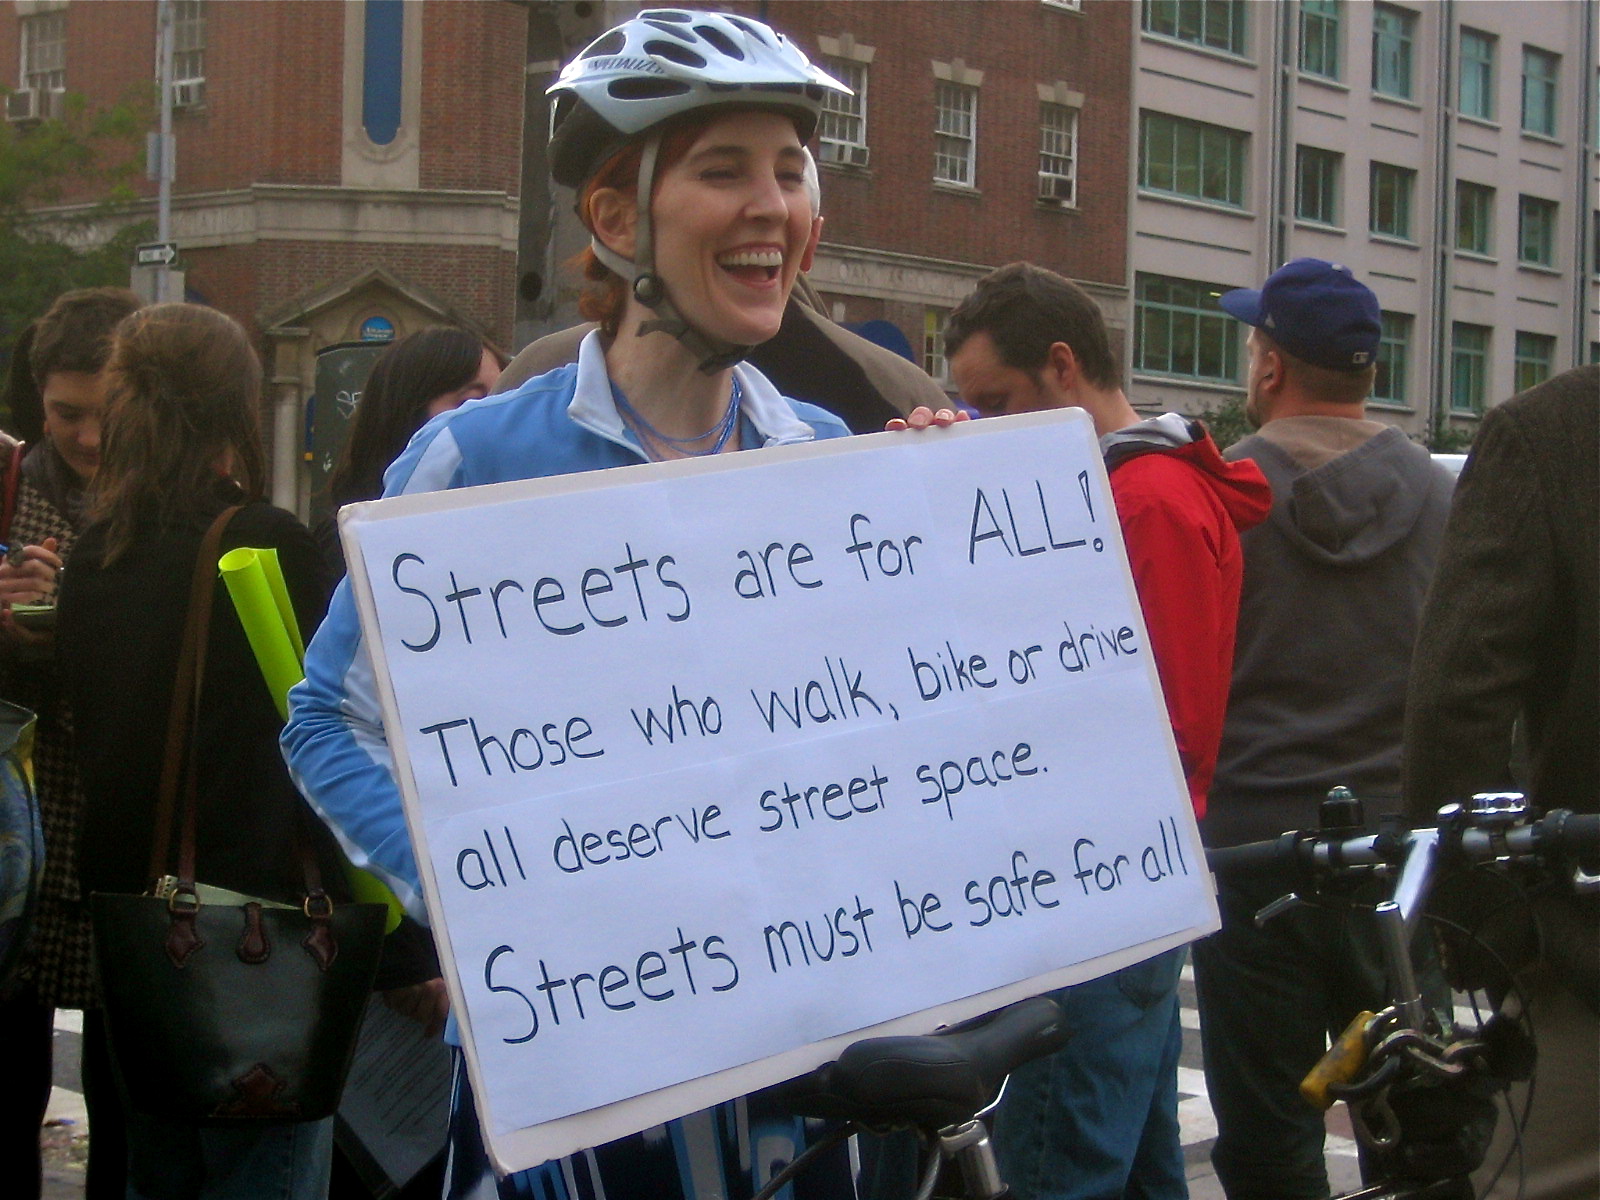 EV Grieve: At Friday's bike lane protest